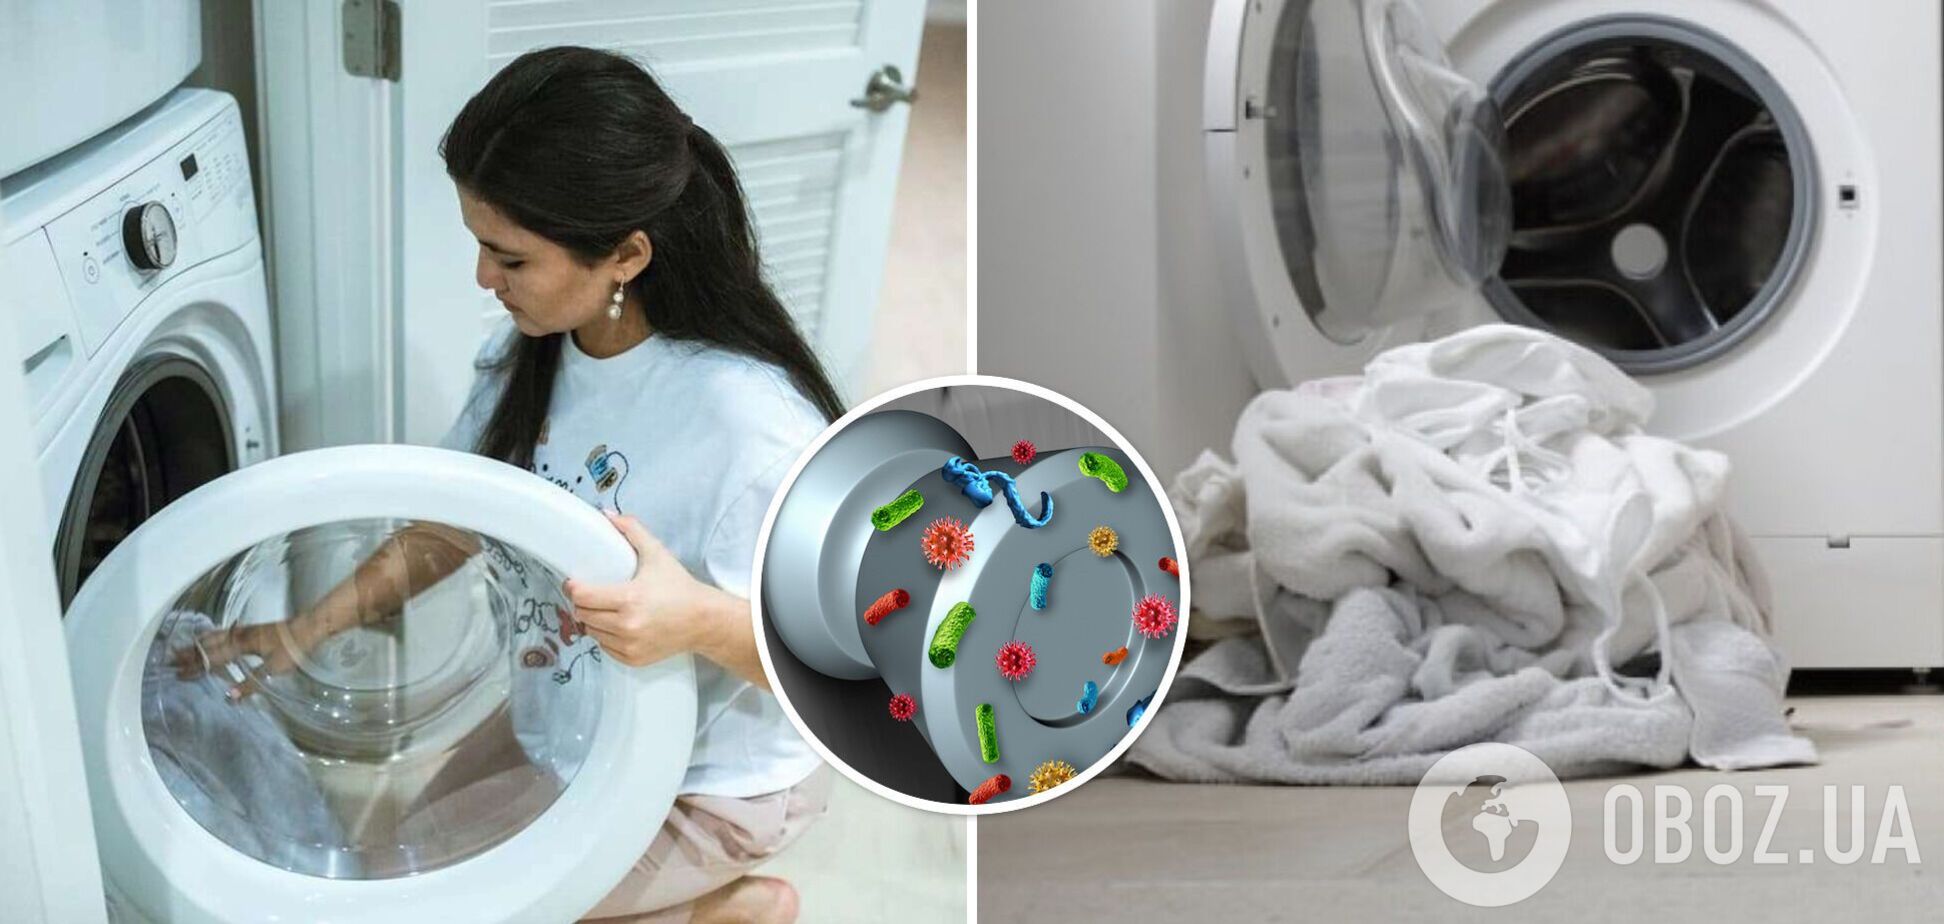 Как легко почистить стиральную машину: этот способ убьет бактерии и удалит налет